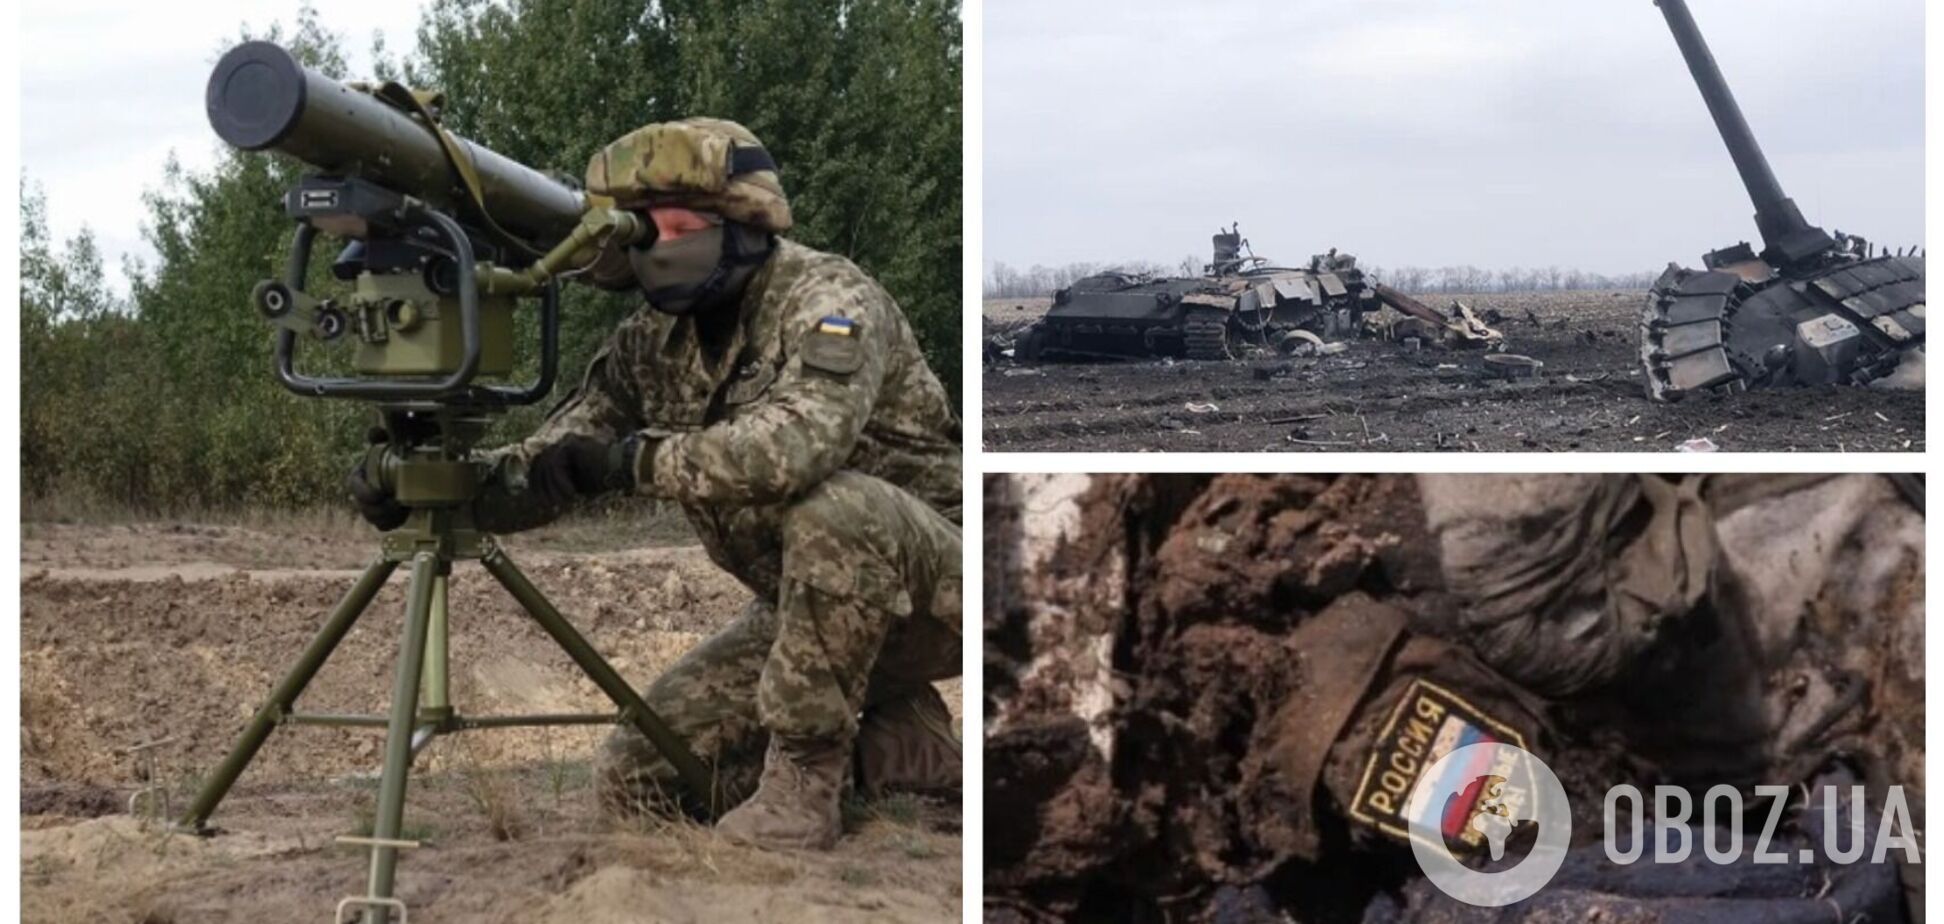 Захисники України за допомогою ПТРК 'Стугна-П' знищили ворожу бронемашину та її екіпаж. Відео